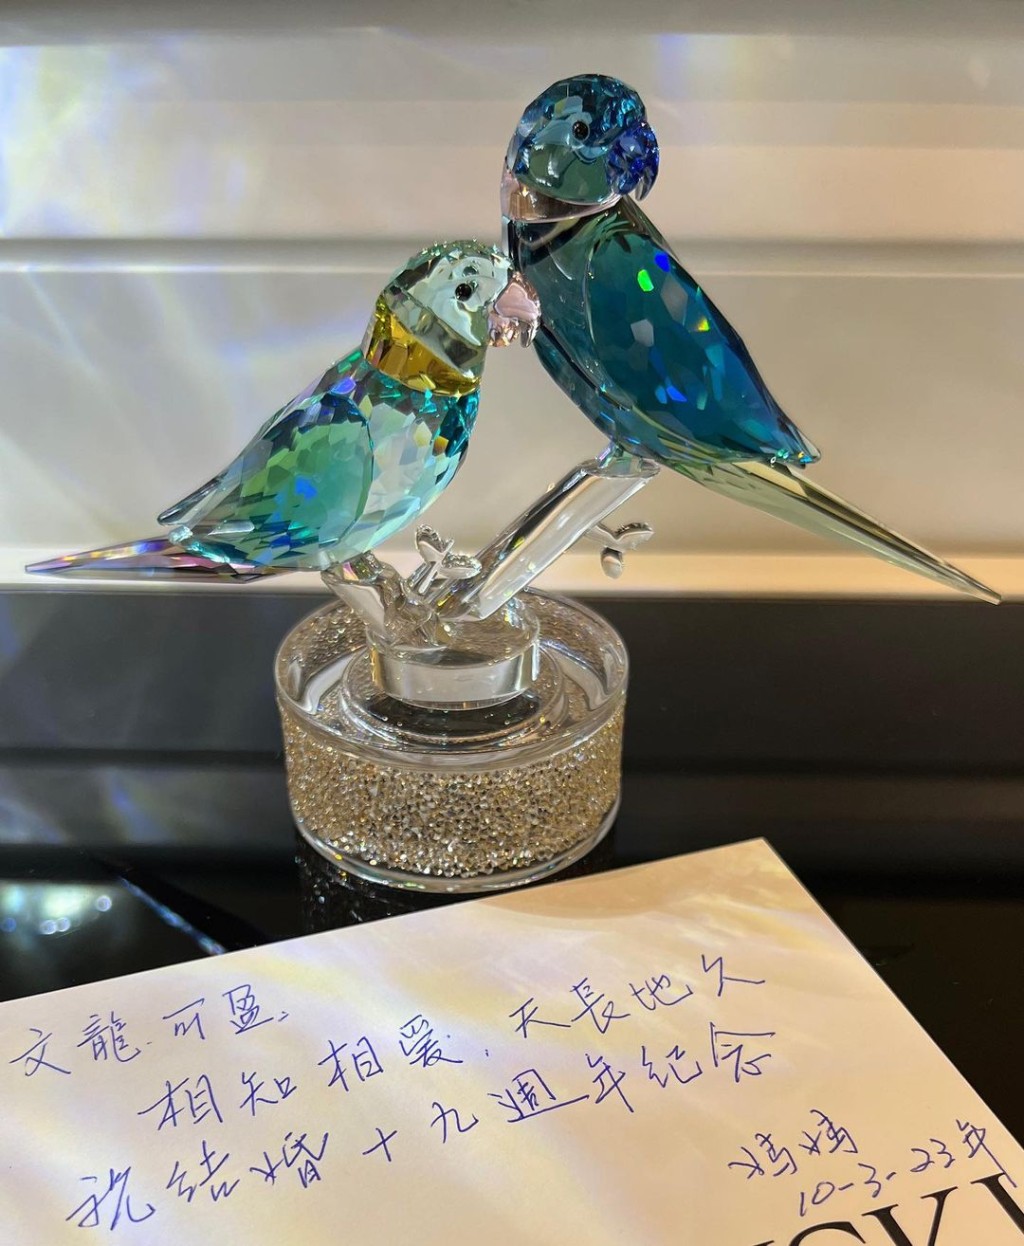 郭可盈除了分享妈妈所赠的水晶比翼鸟，亦分享由妈妈亲手写的祝贺语：「相知相爱、天长地久，祝结婚19周年纪念。」